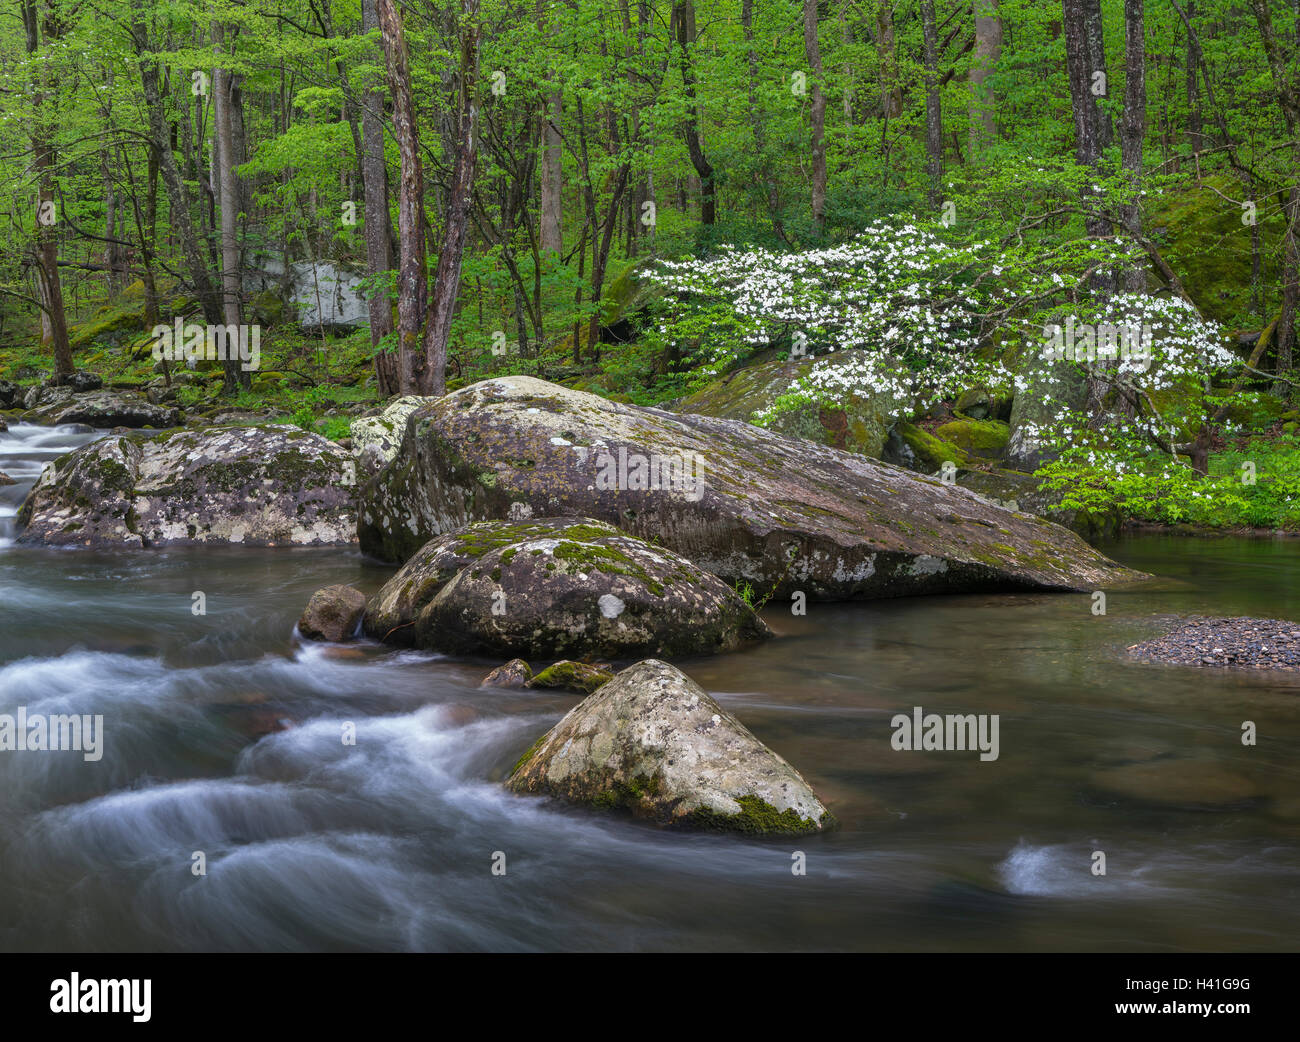 Great Smoky Mountains National Park, Maryland : Cornouiller fleuri sur le volet du milieu Petite rivière au printemps Banque D'Images